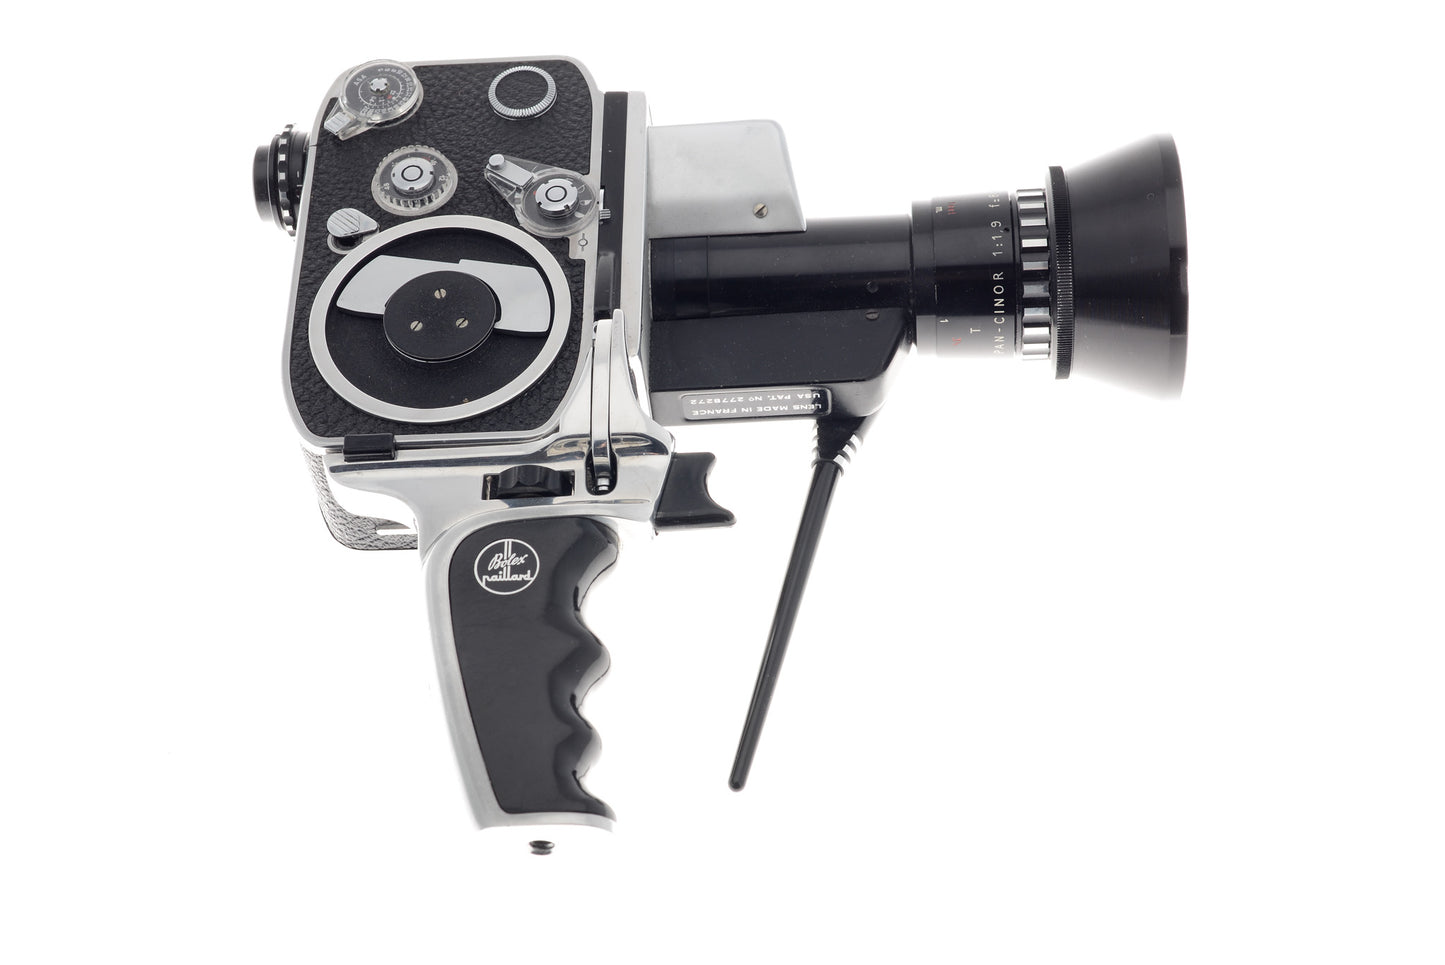 Bolex Paillard P1 Zoom Reflex - Camera